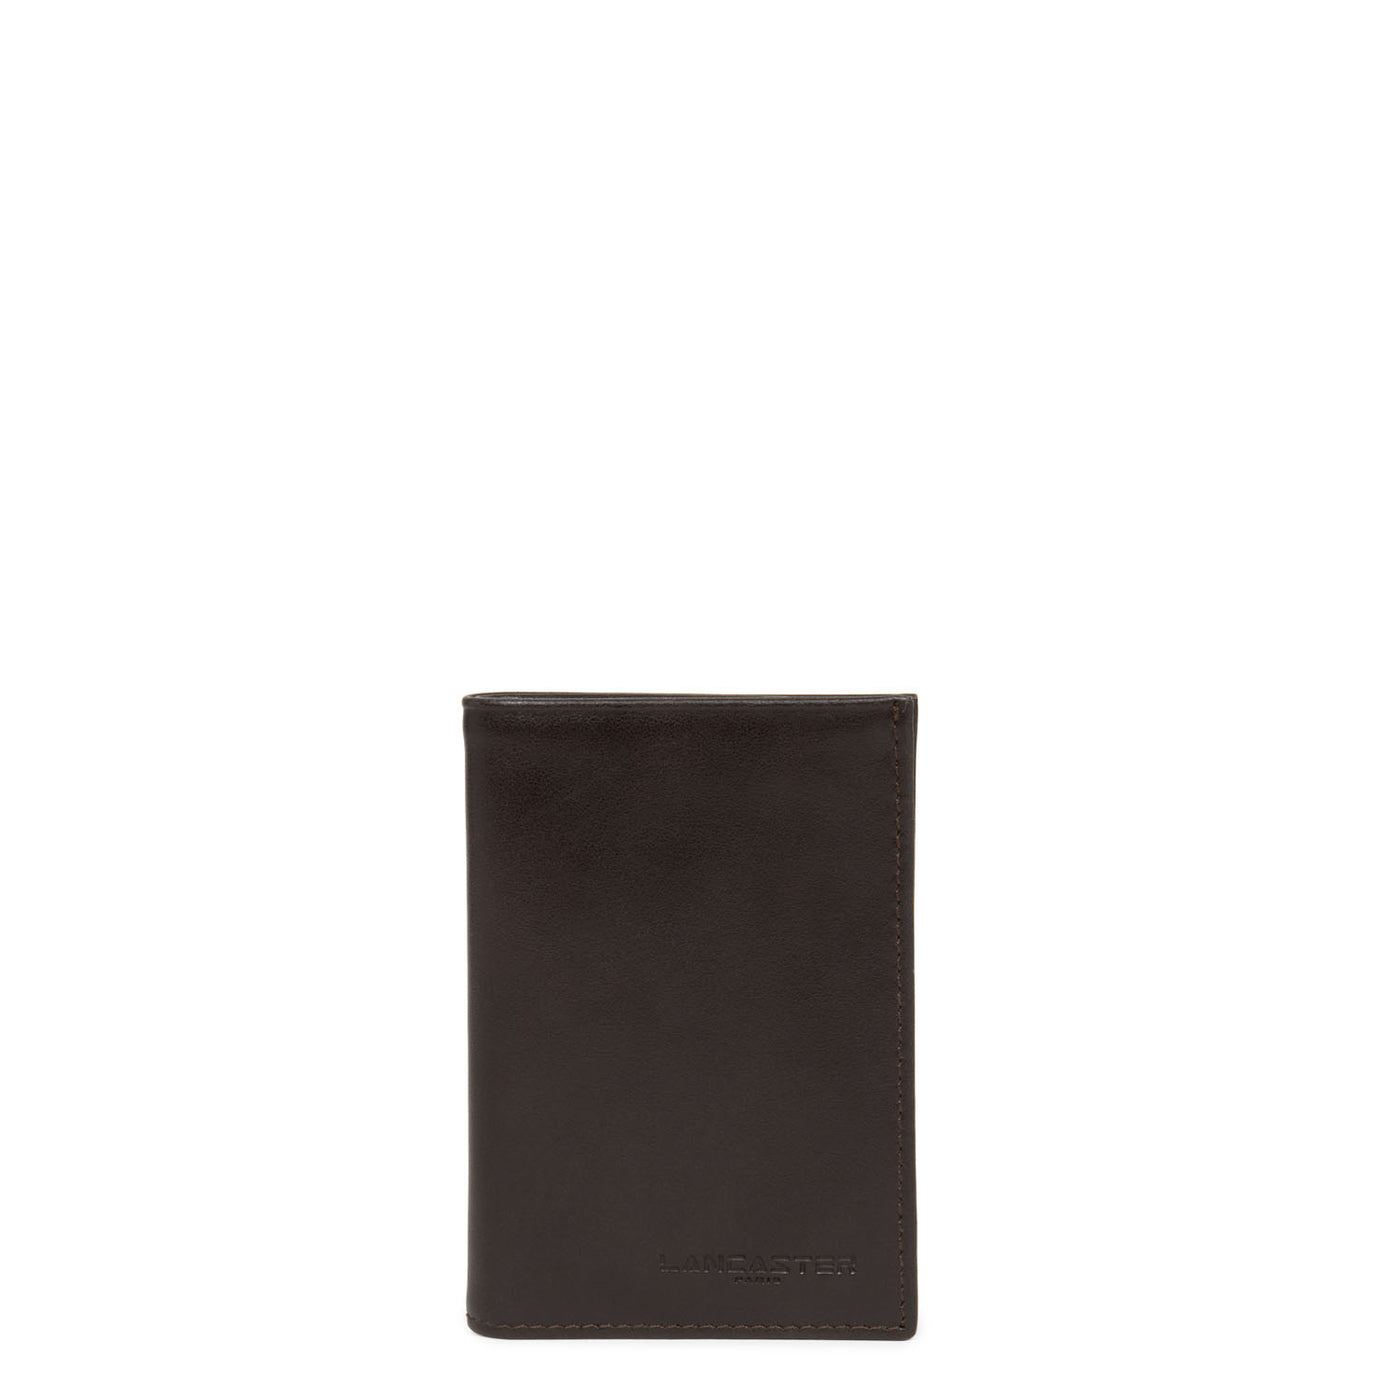 porte-cartes - p.m. l'homme made in france #couleur_marron